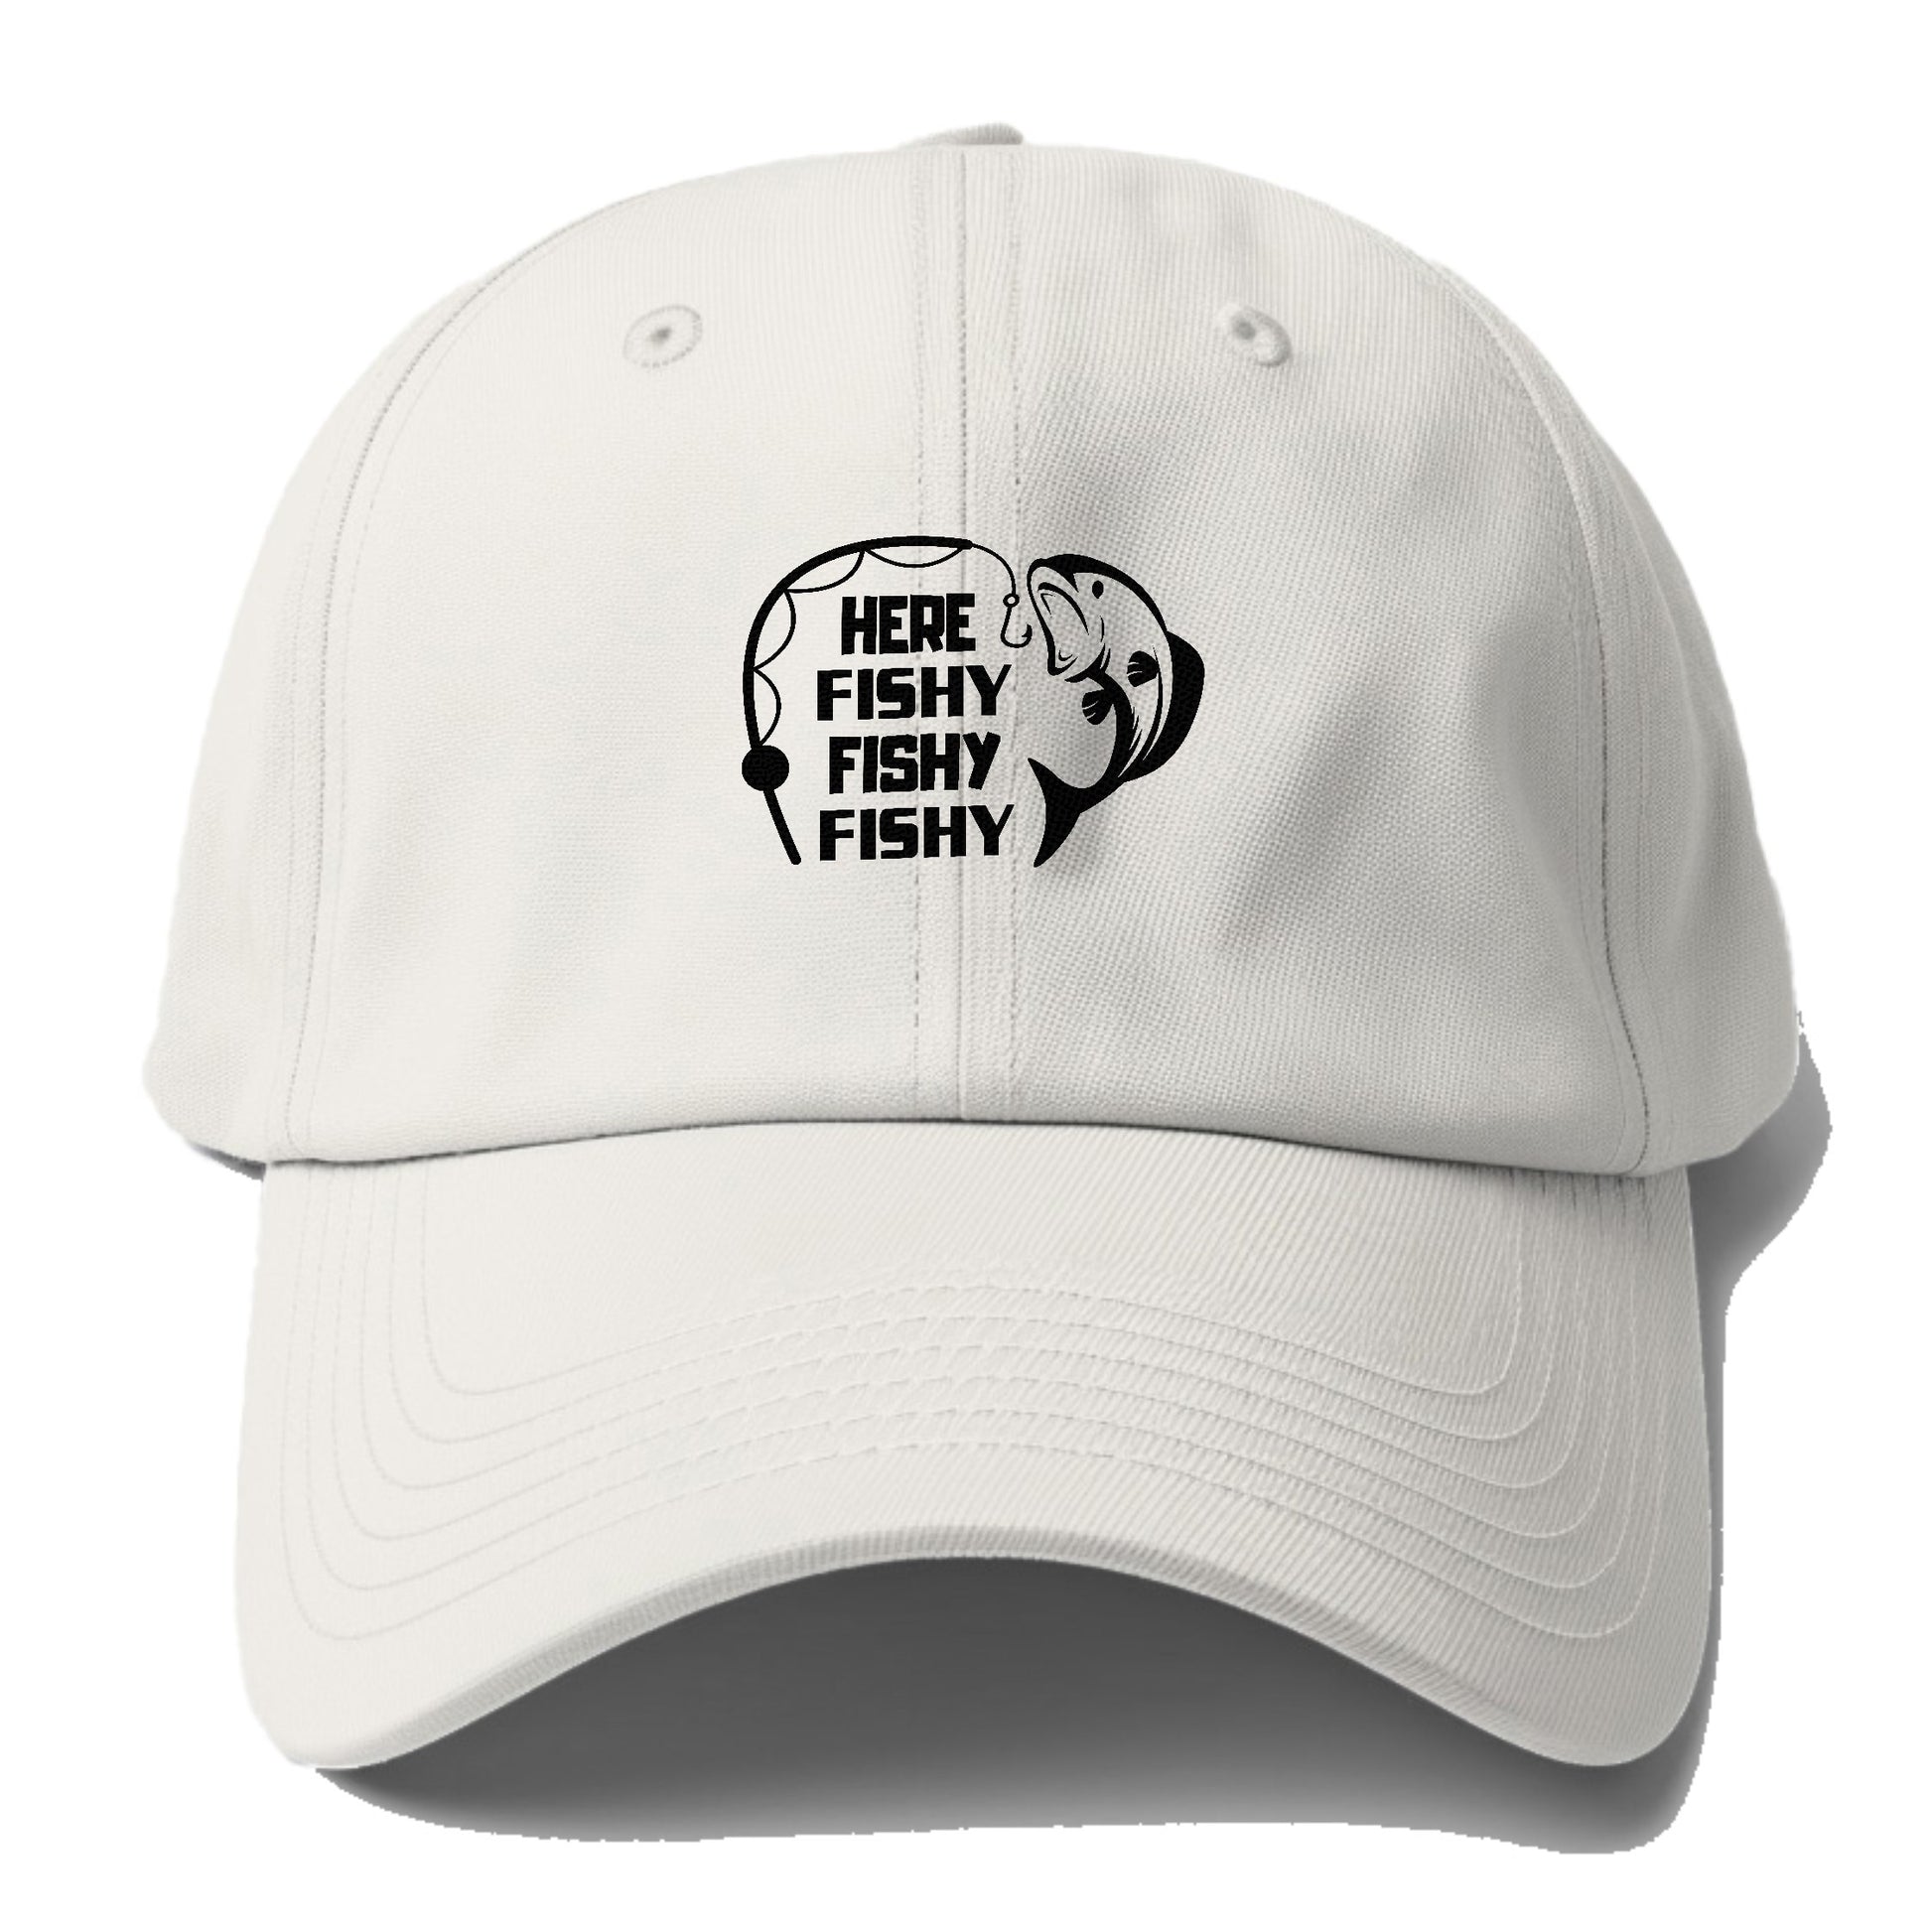 Here fishy fishy fishy  Hat